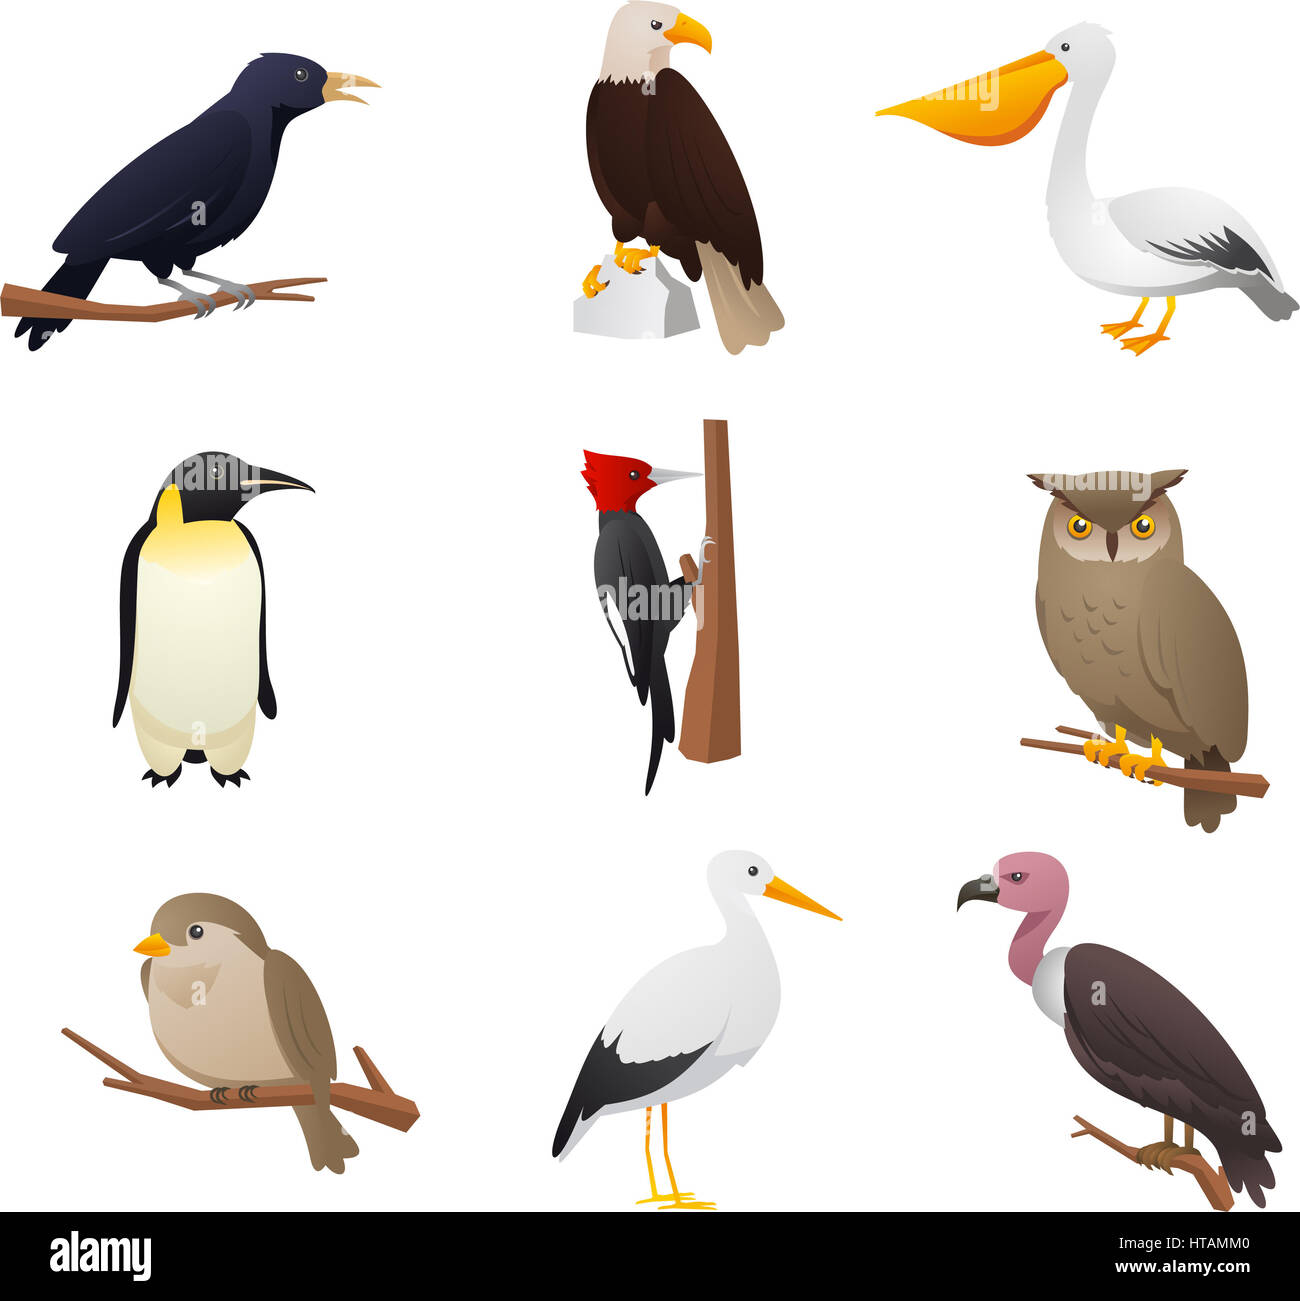 Realistische Vogelsammlung mit Eule, Pelikan, Specht, Pinguin, Adler, Vogel, Kardinal und Raven Vektor-Illustration. Stockfoto